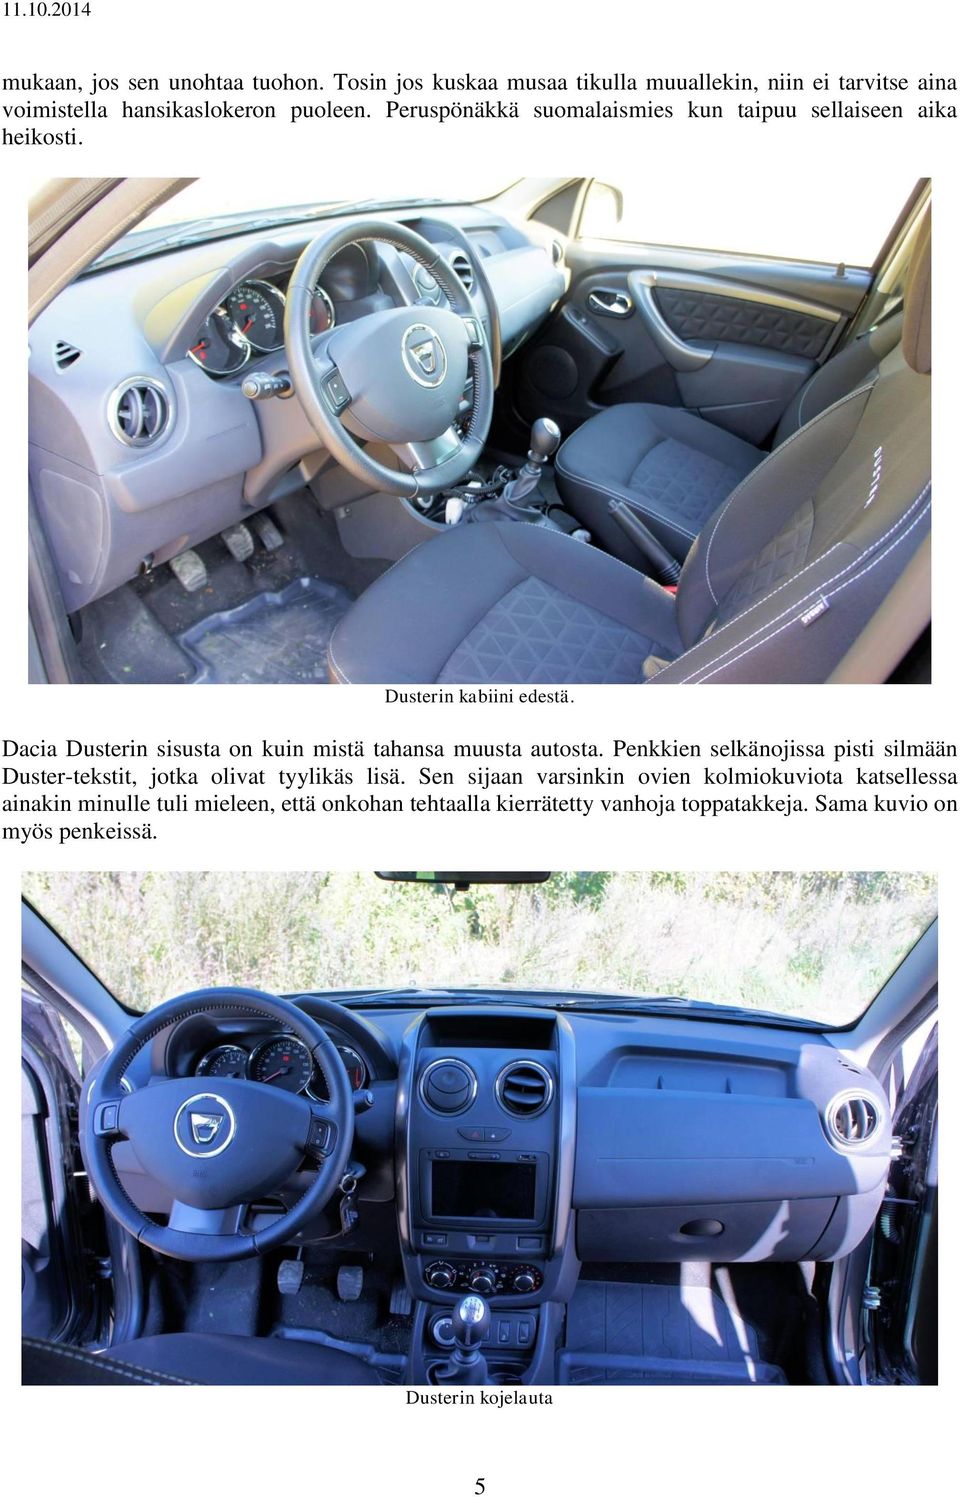 Dacia Dusterin sisusta on kuin mistä tahansa muusta autosta.